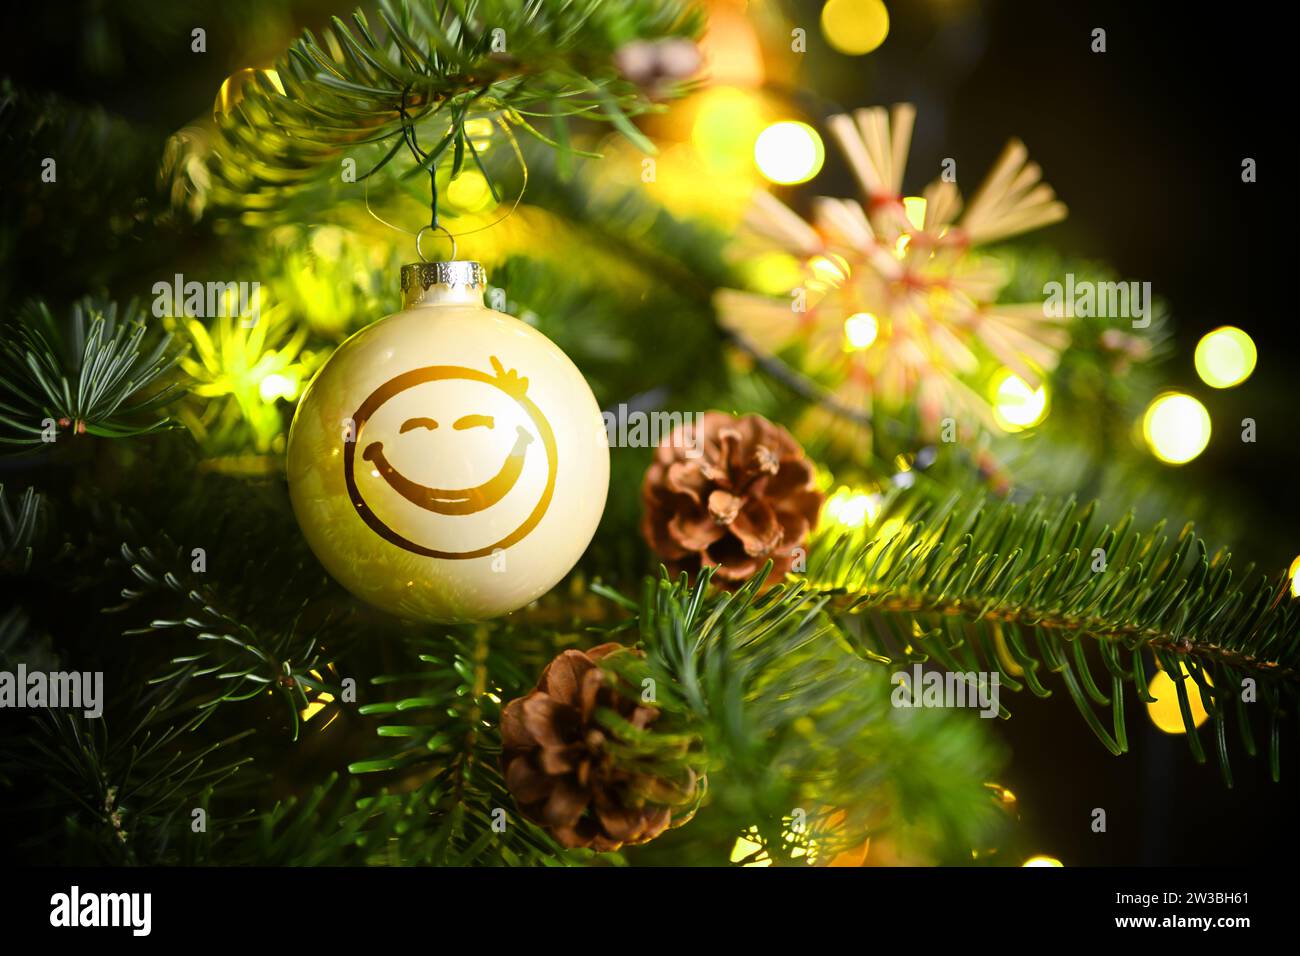 FOTOMONTAGE, Weihnachtskugel mit Smiley hängt an einem Weihnachtsbaum Stock Photo